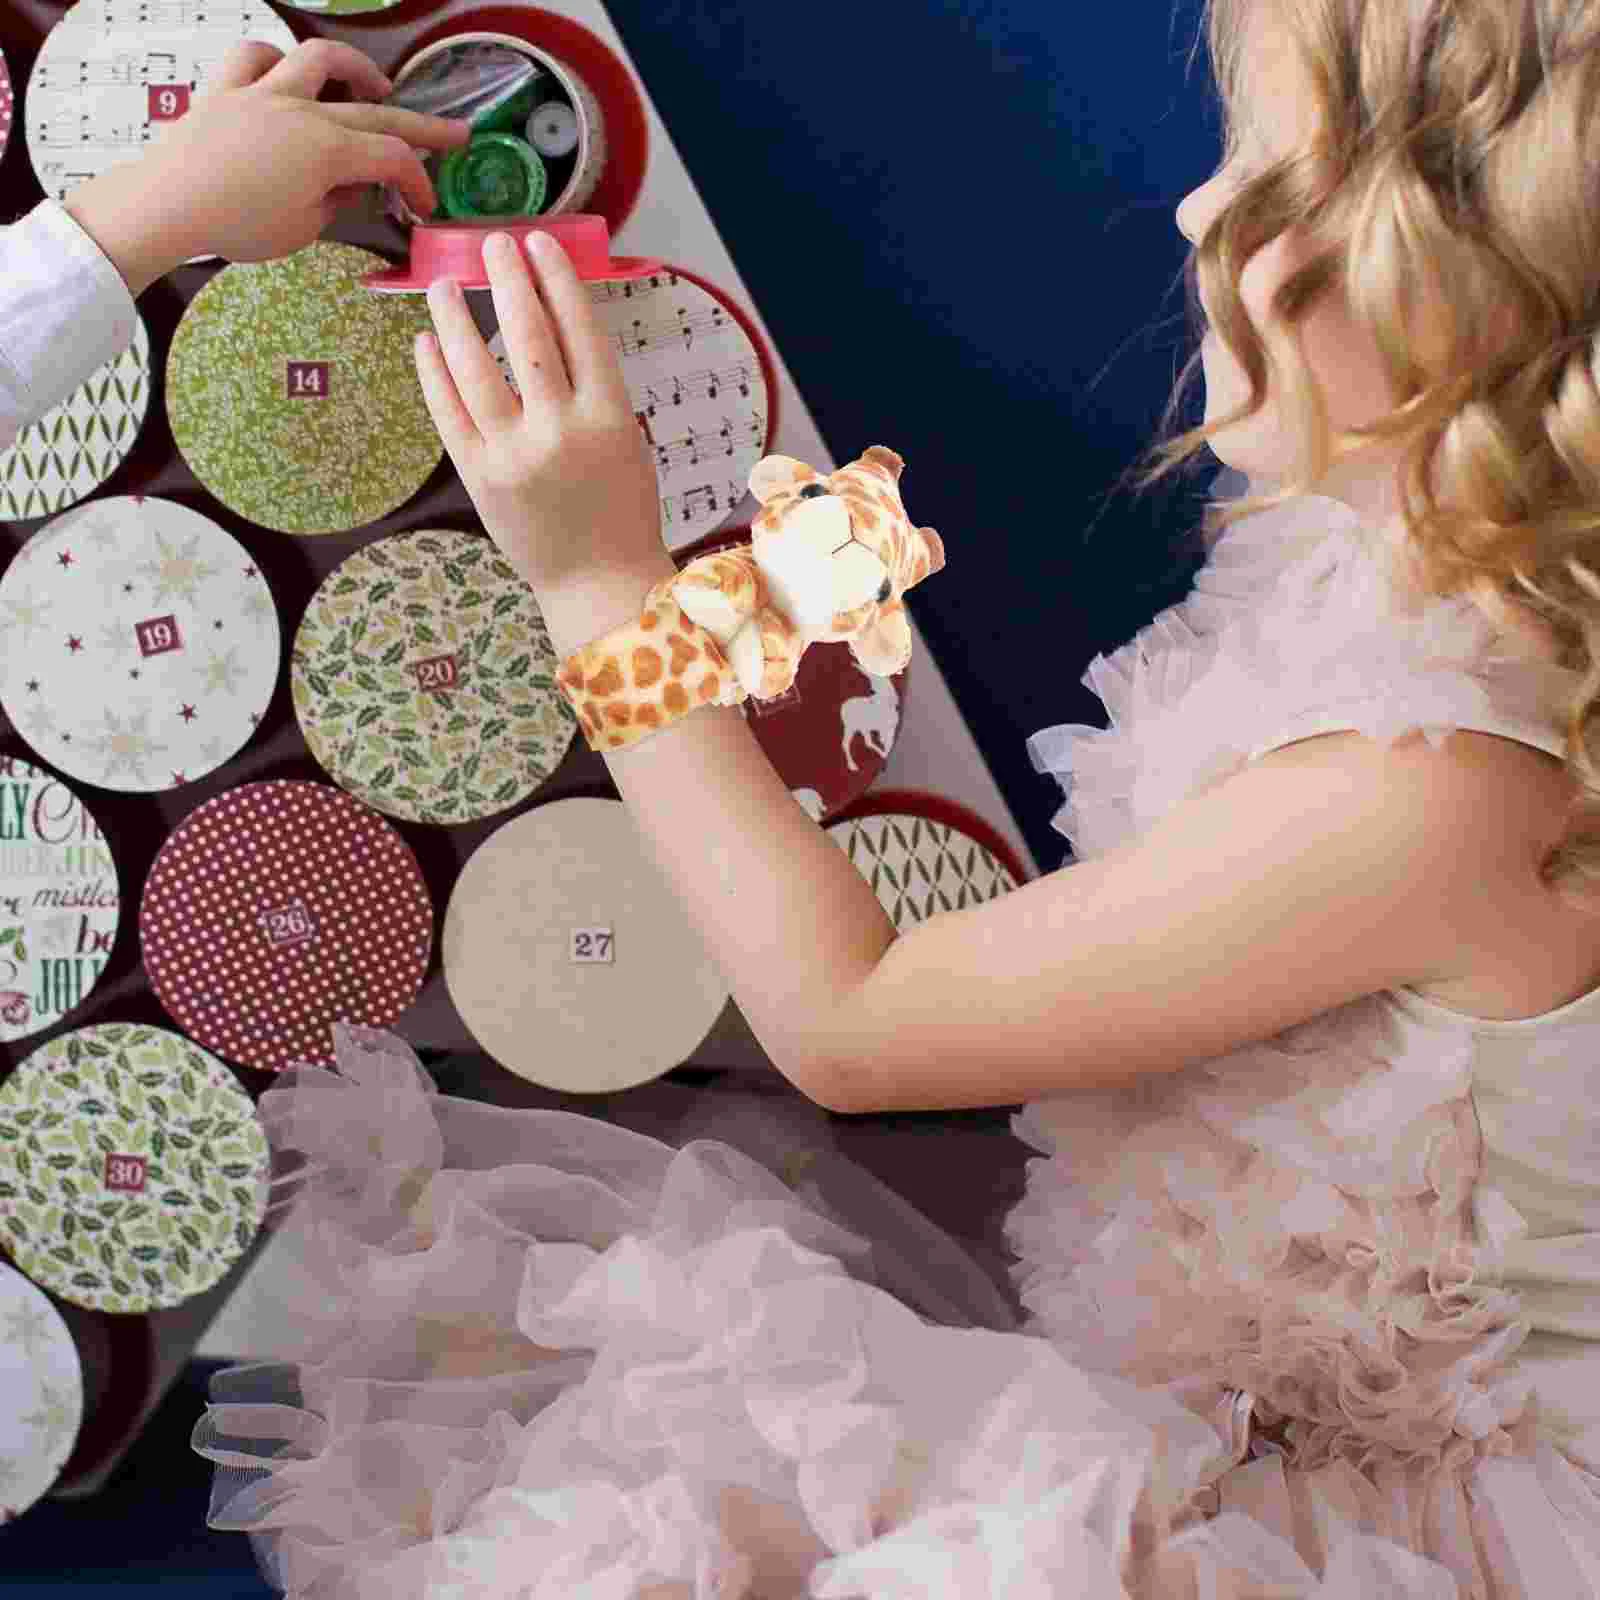 

Браслет Slap, детские мягкие браслеты с животными, Детские регулируемые браслеты, сувениры для мальчиков, рождественские подарки, джунгли для гостей на день рождения детей